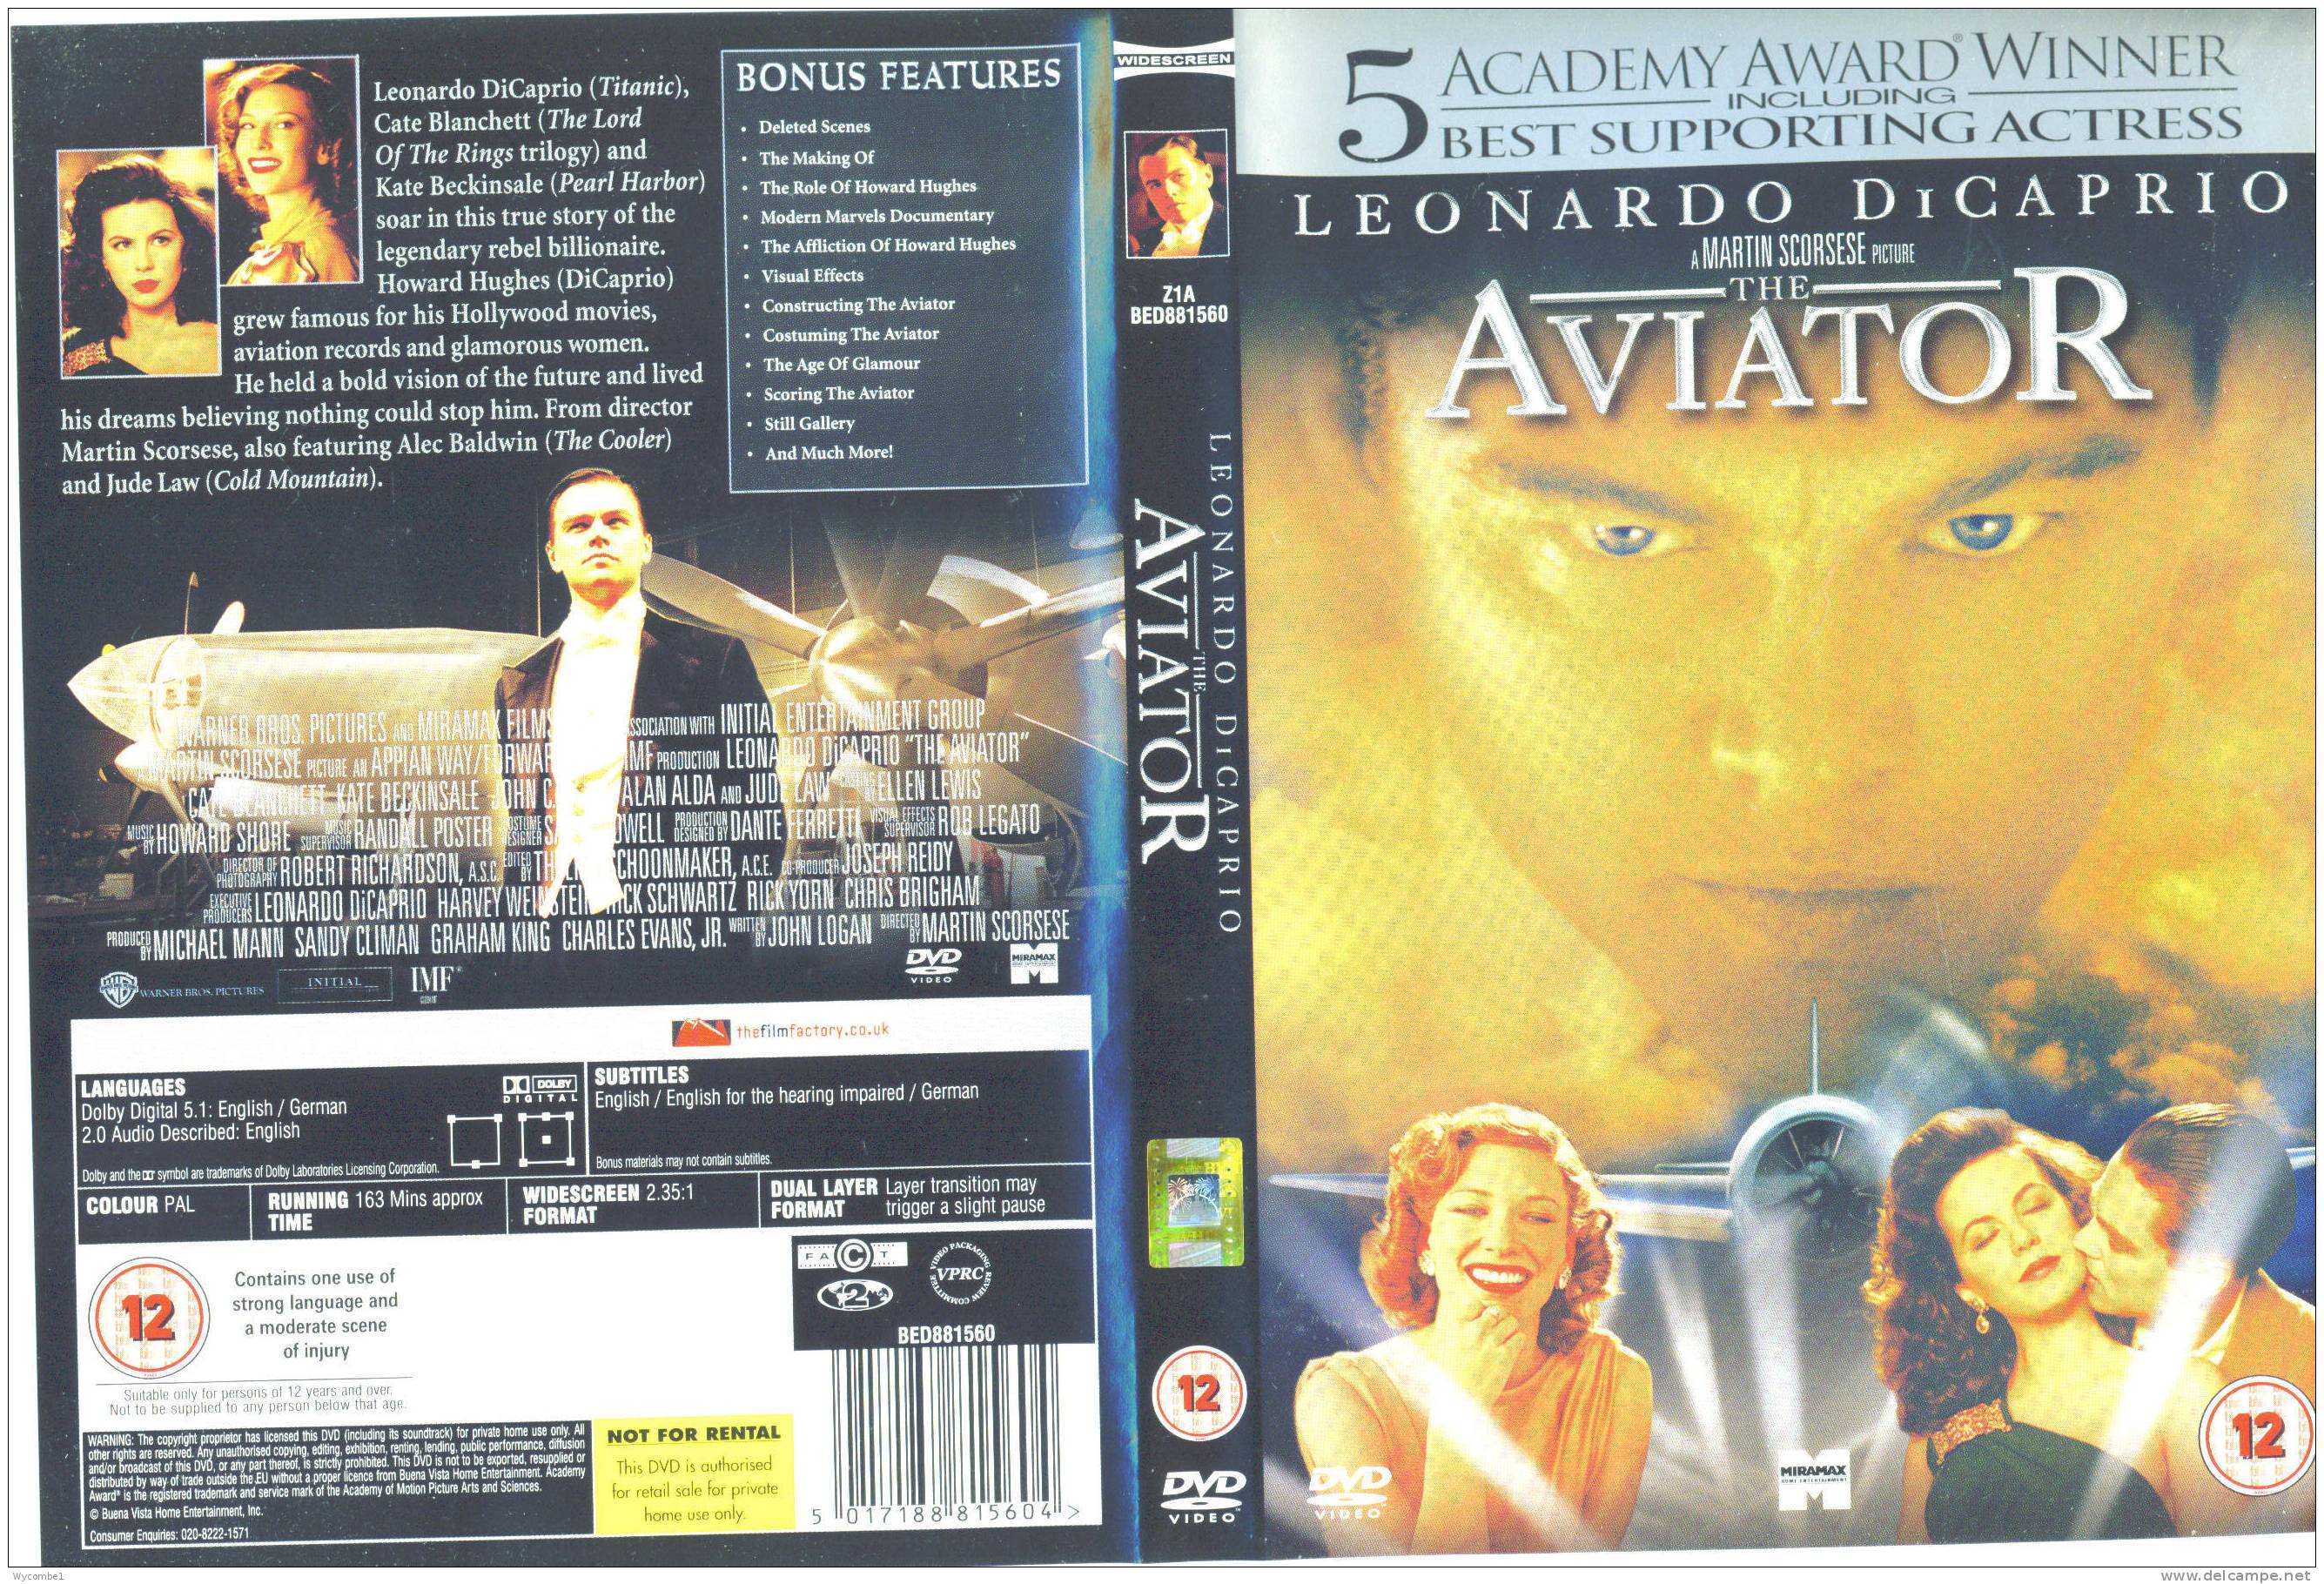 THE AVIATOR - Leonardo DiCaprio (Details As Scan) - History